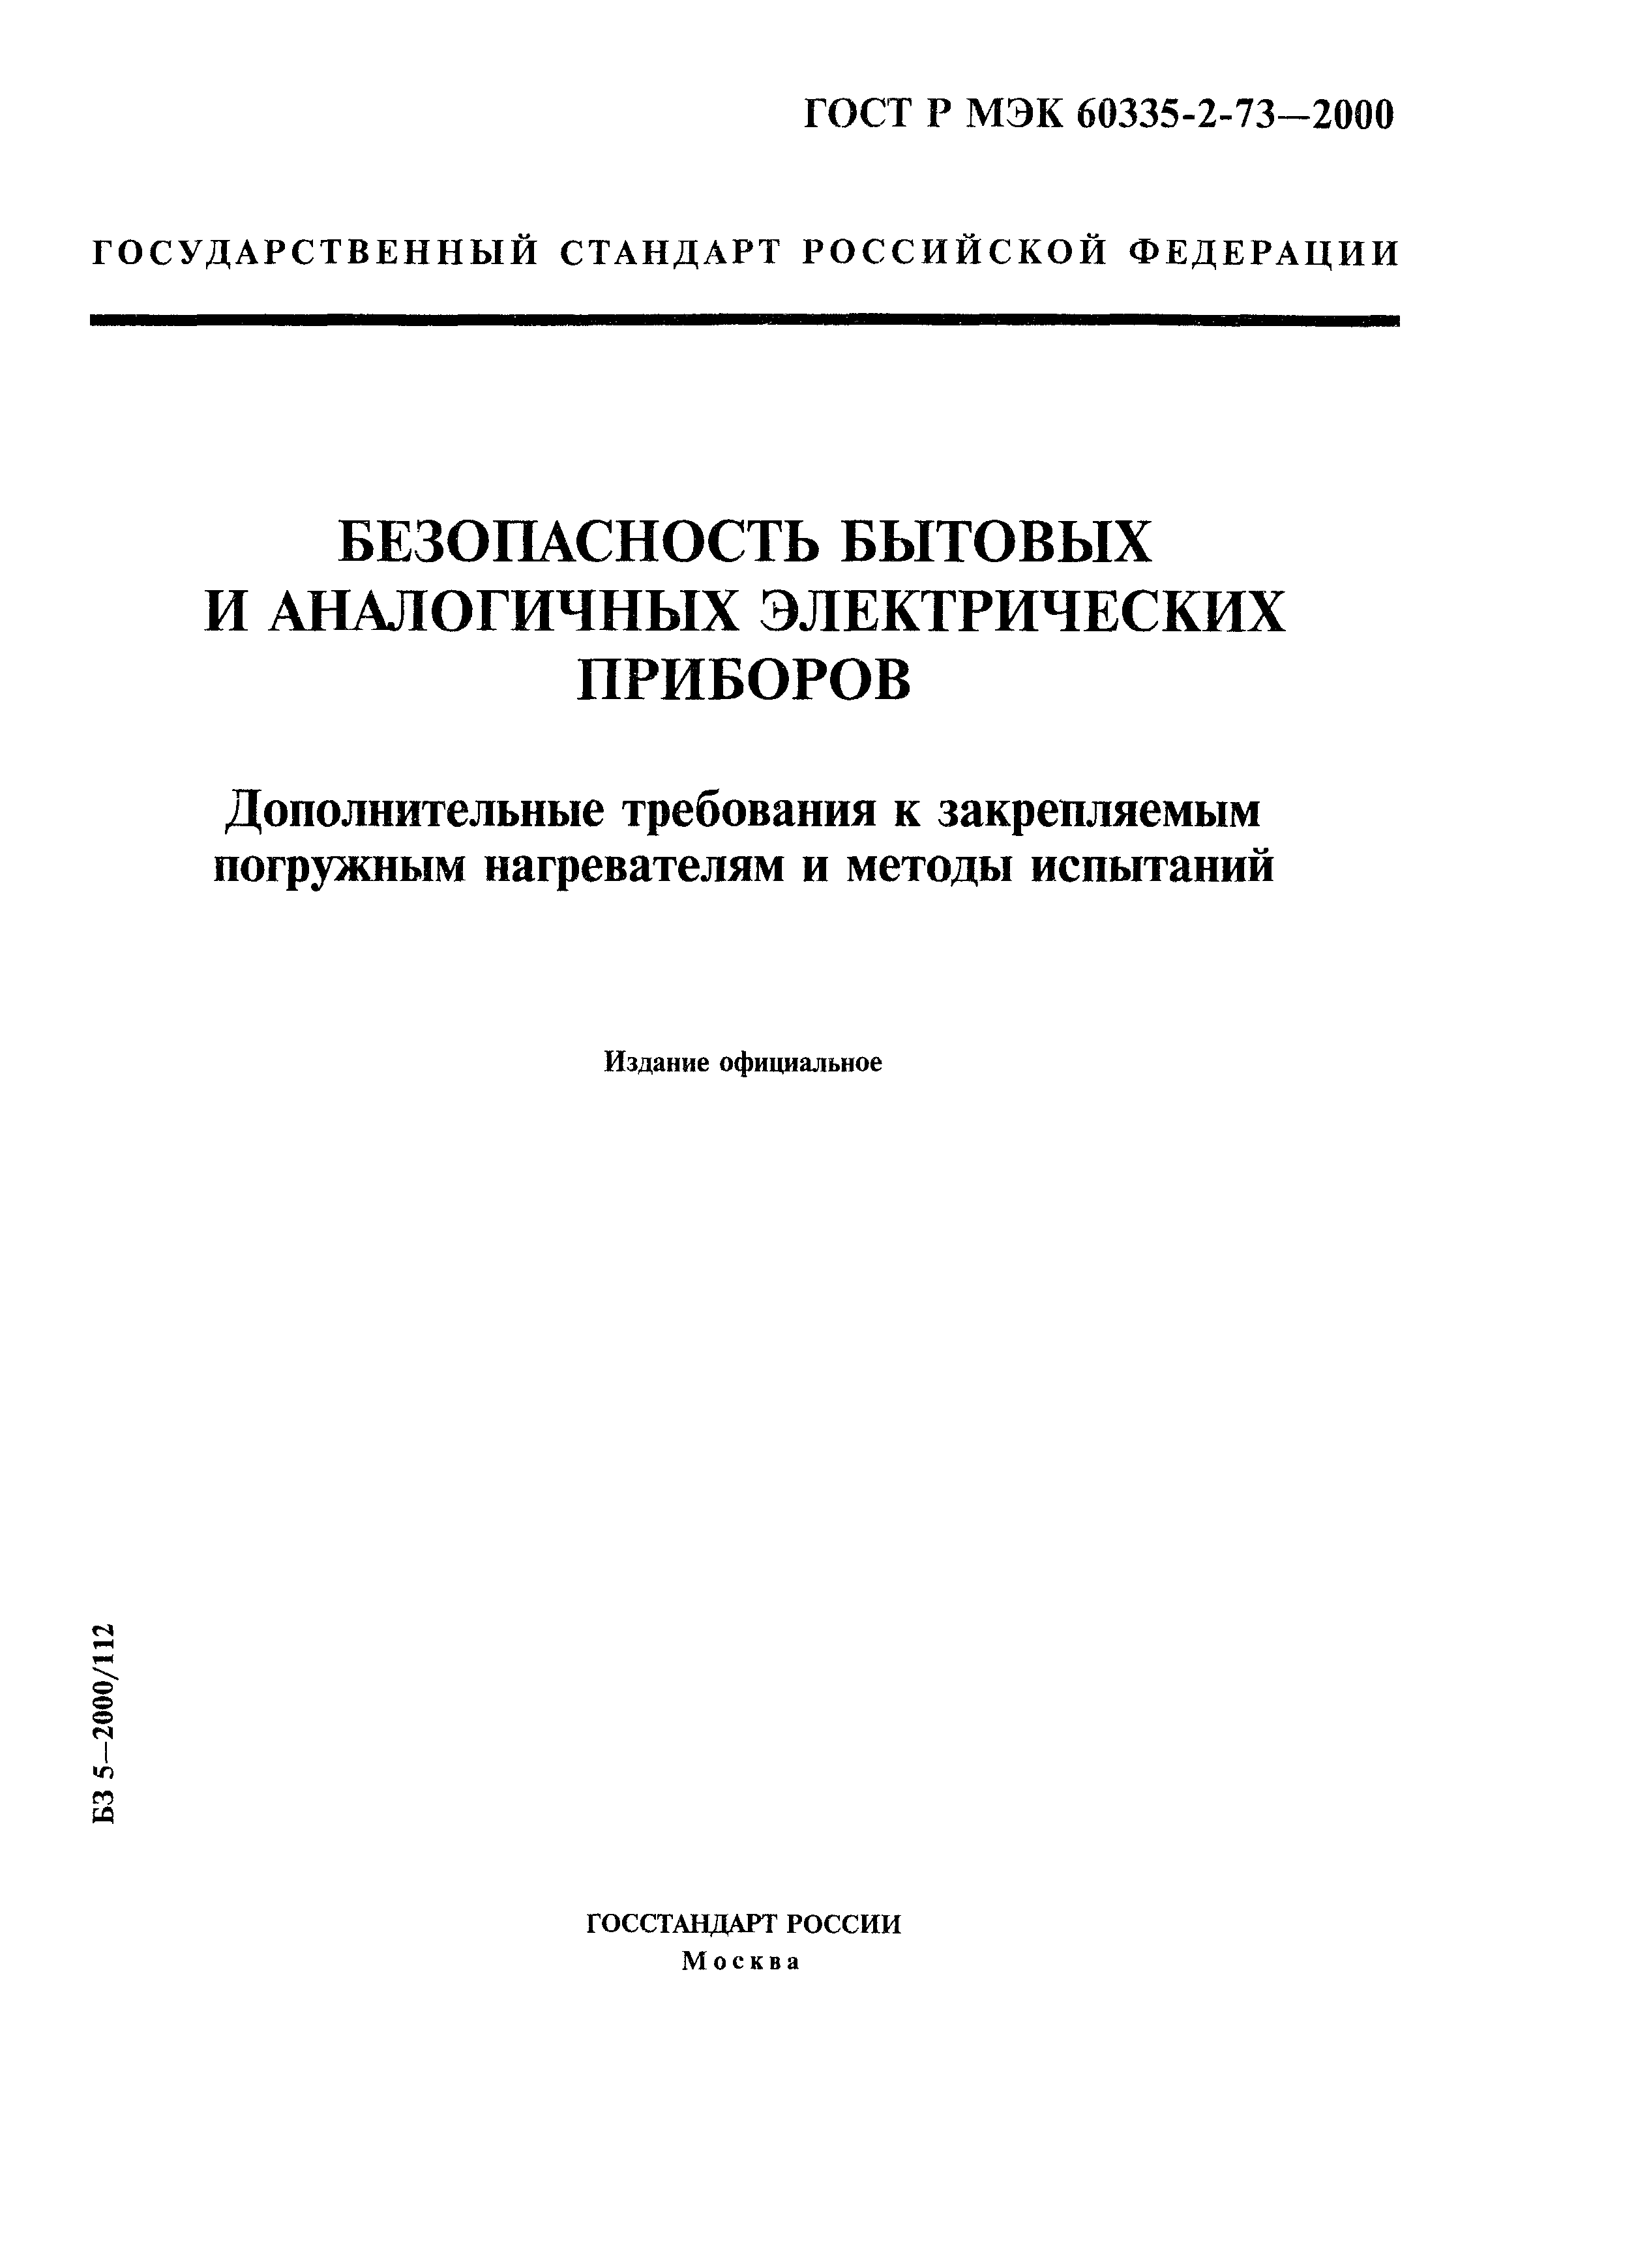 ГОСТ Р МЭК 60335-2-73-2000